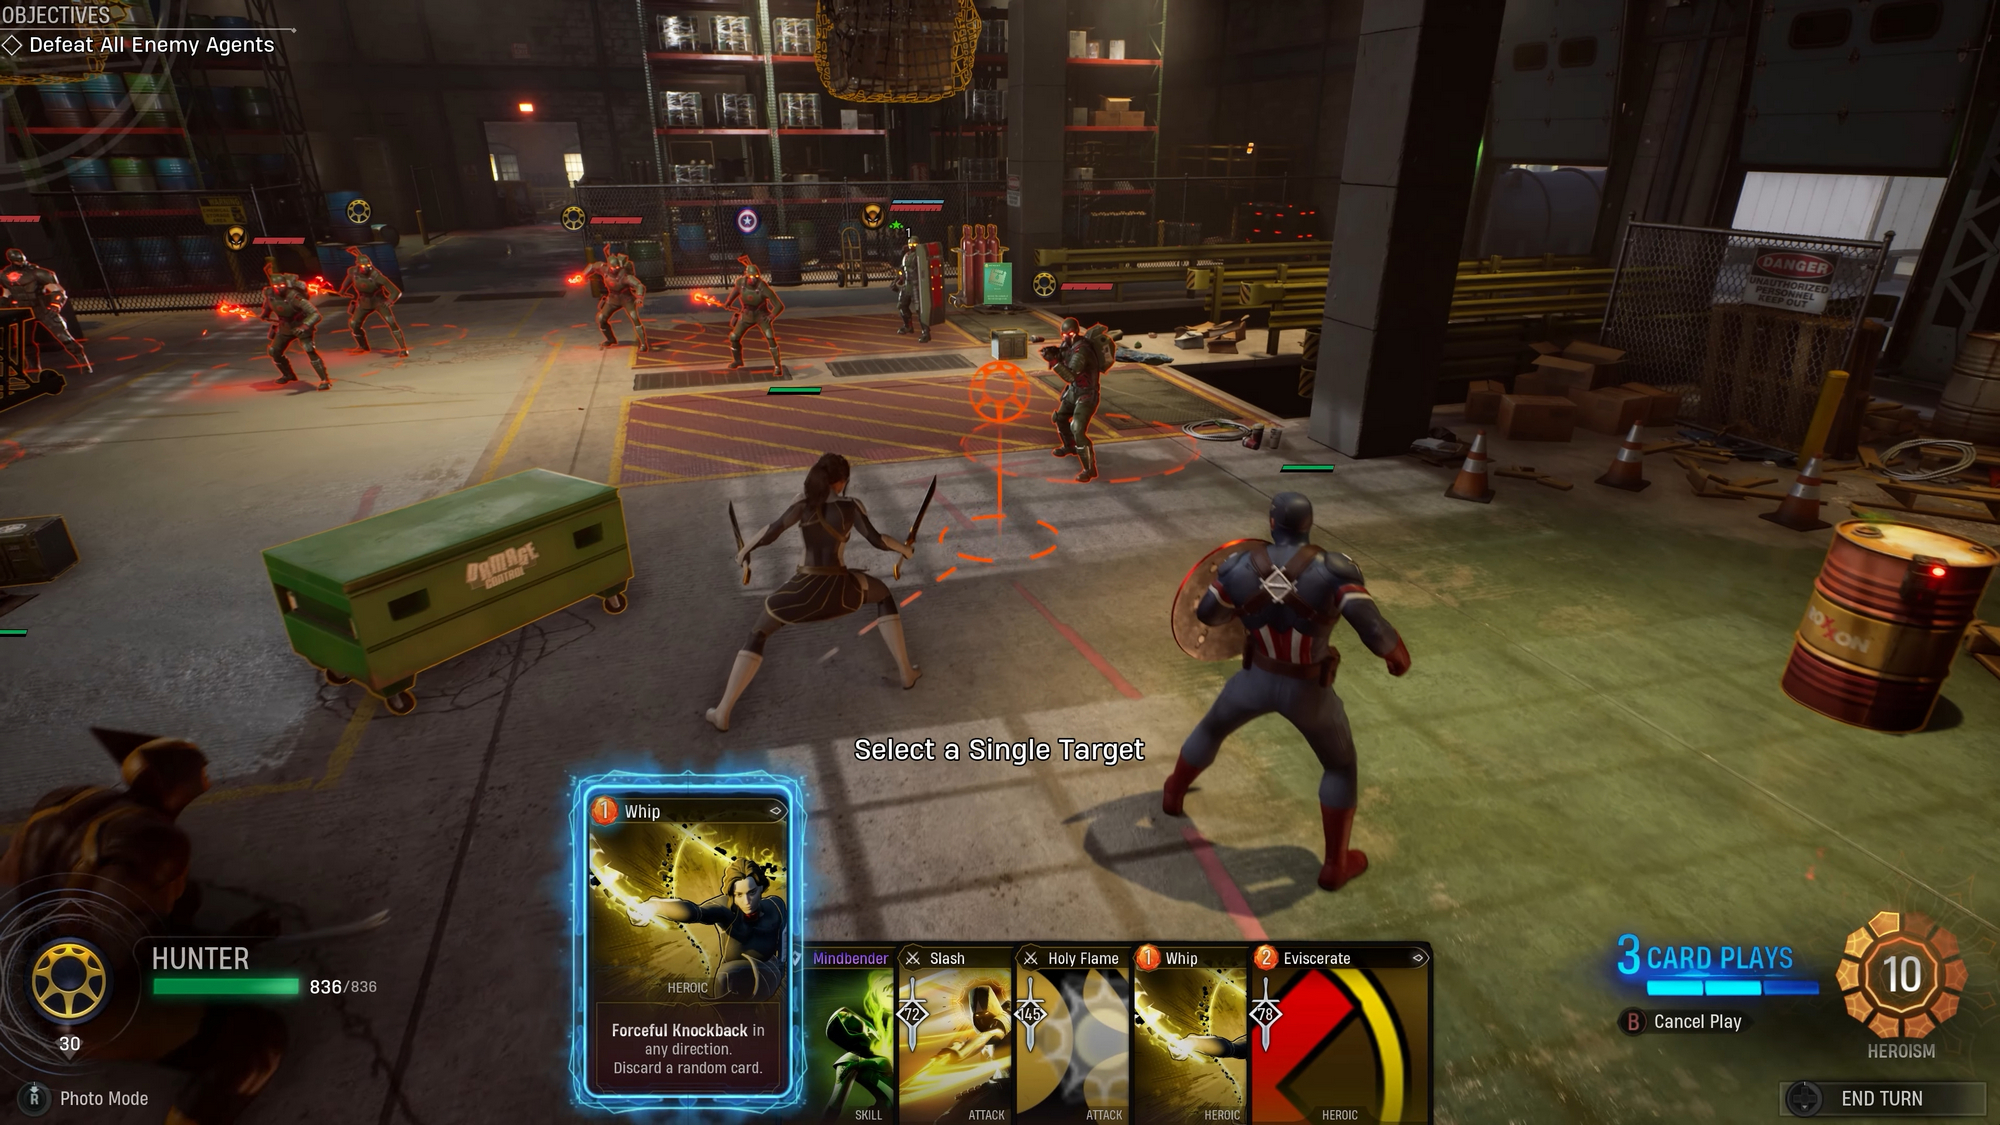 Slideshow: Marvel's Midnight Suns - Gameplay Screenshots